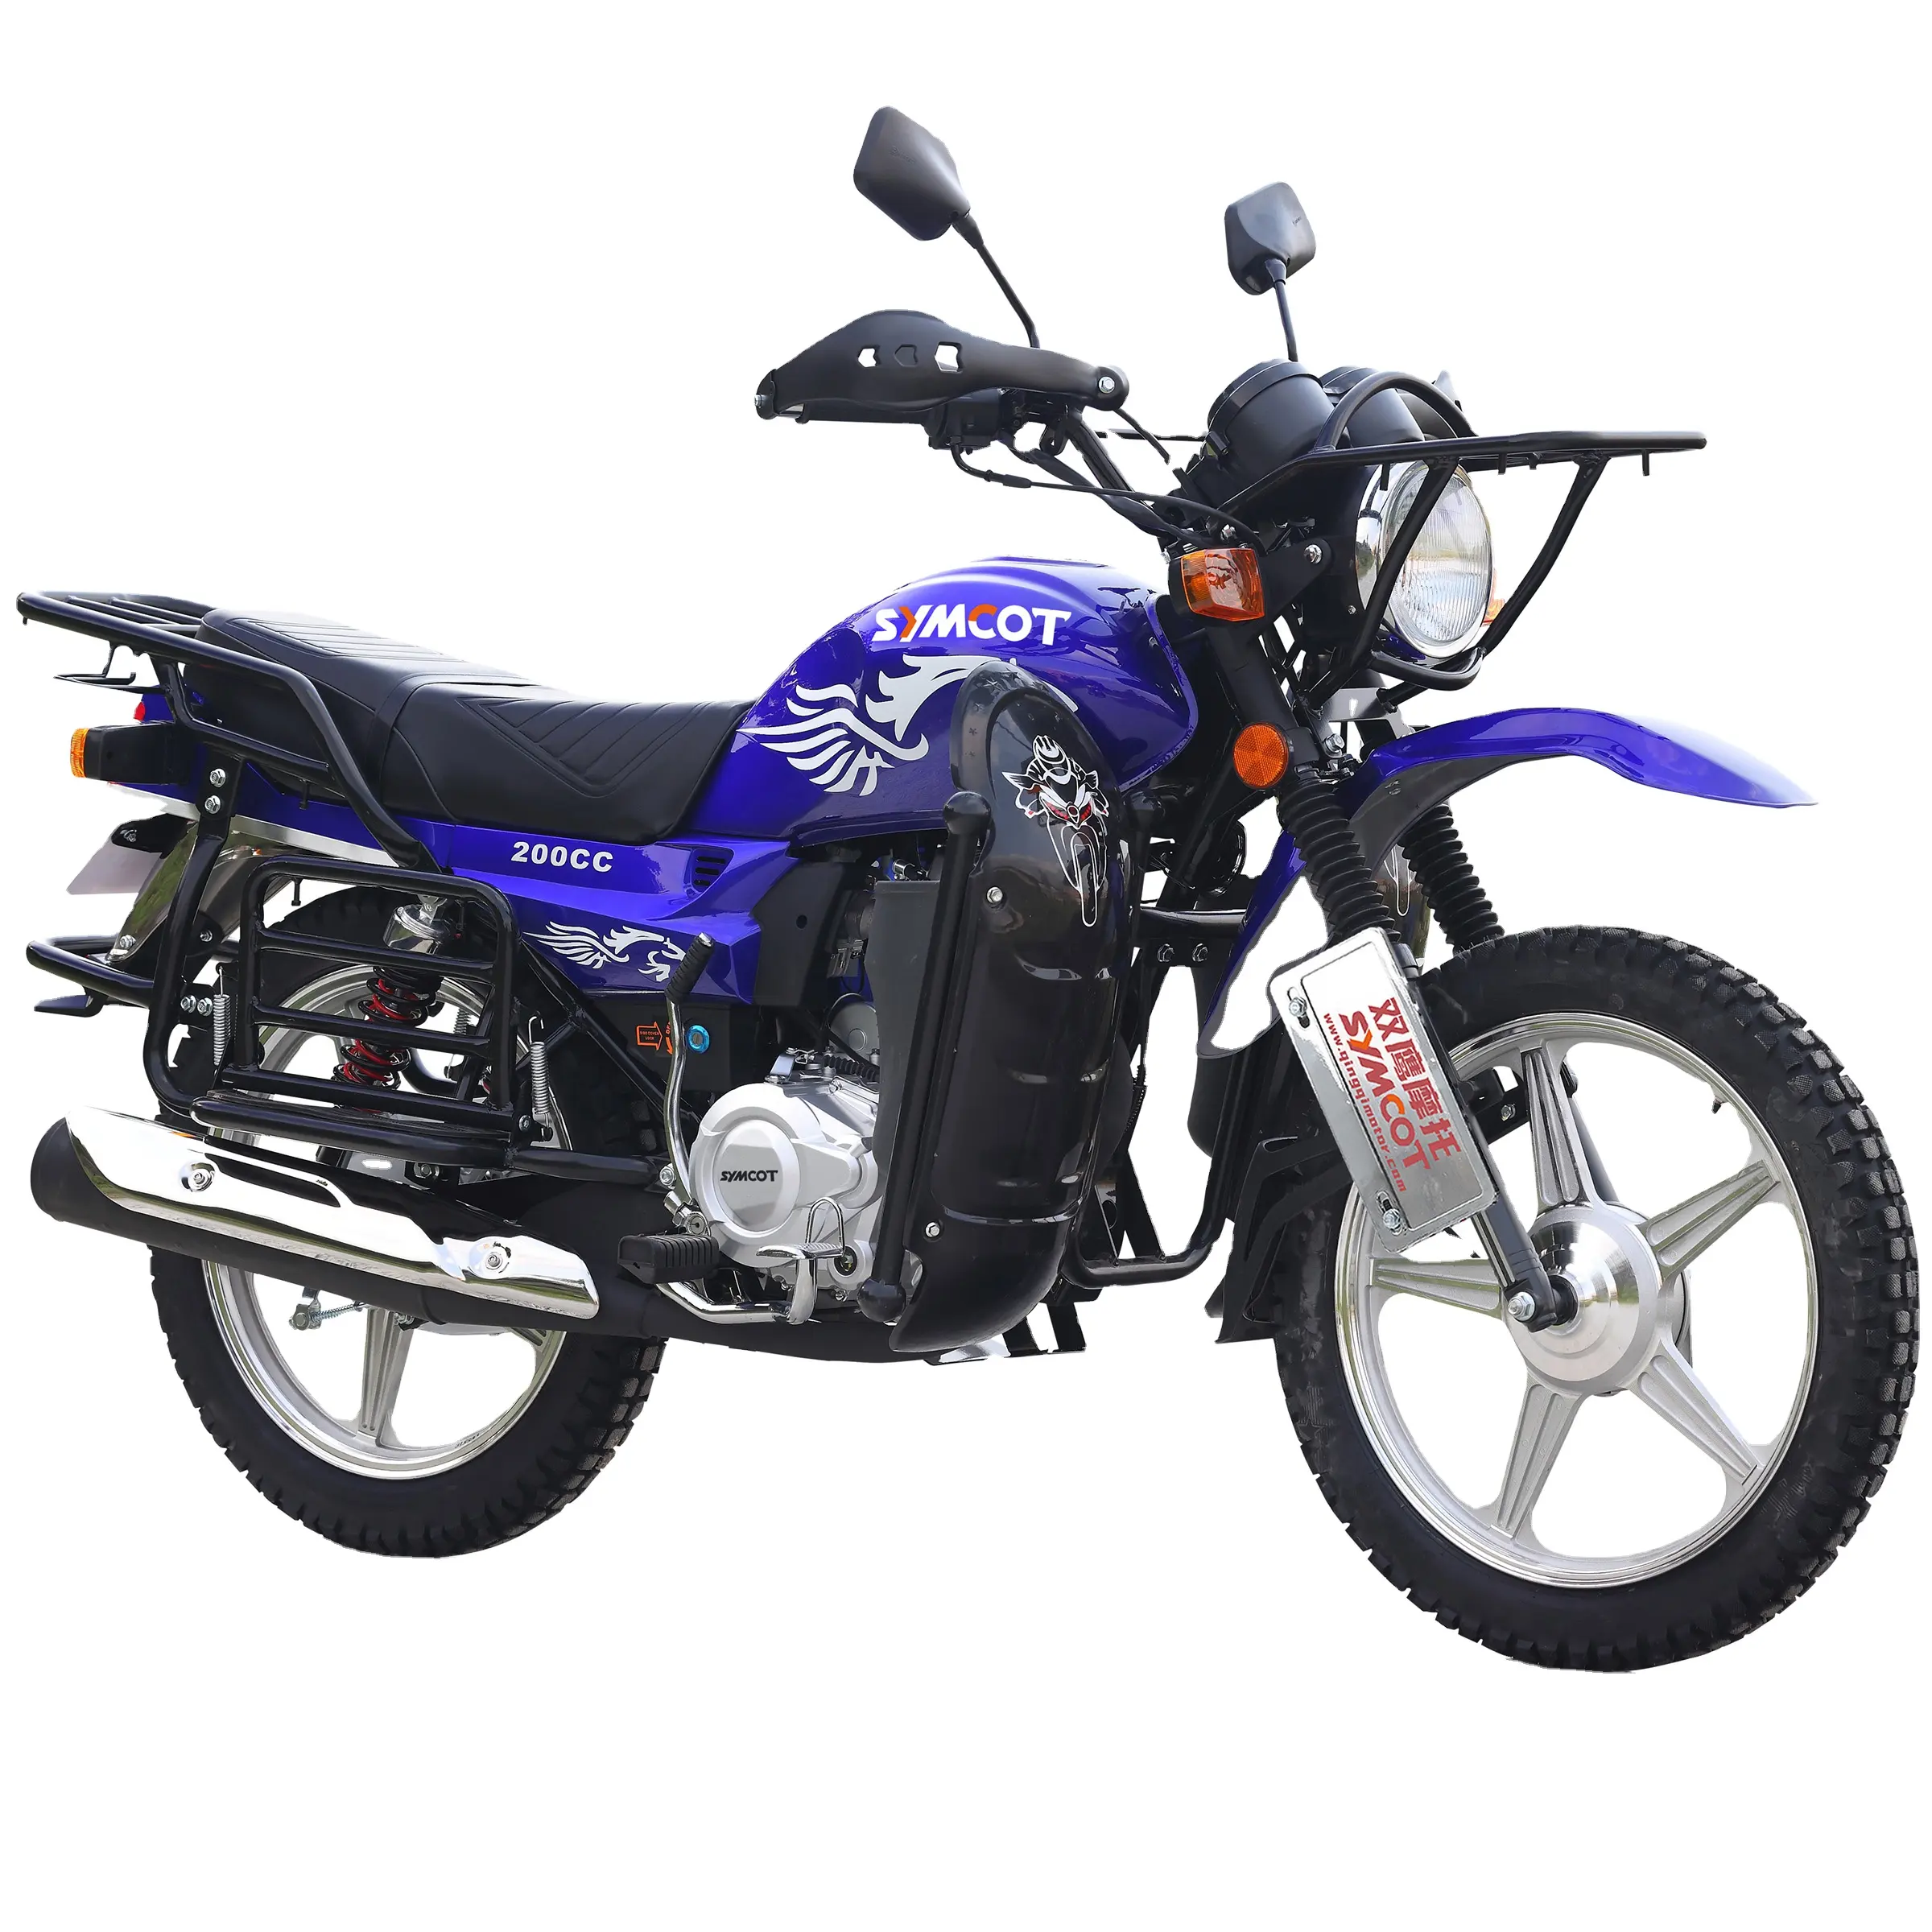 Dominik Moto OEM Gato 4 valf yedek parçaları cg 200 motosiklet elektrikli 150cc 125cc sokak bisikleti ucuz ithalat motosikletler 1 alıcı